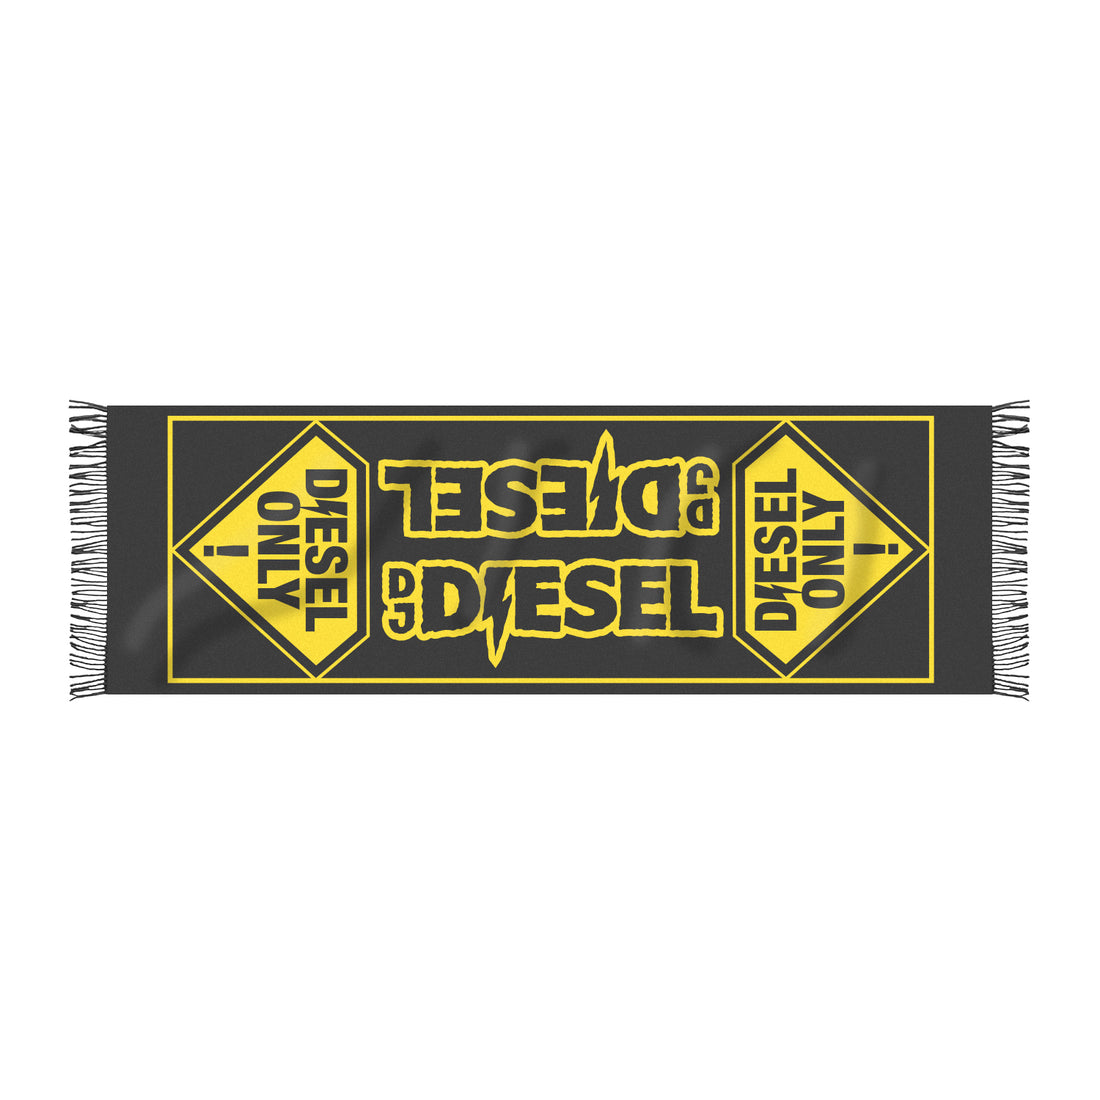 DJ DIESEL - Diesel Only - Pashmina - Black / Yellow